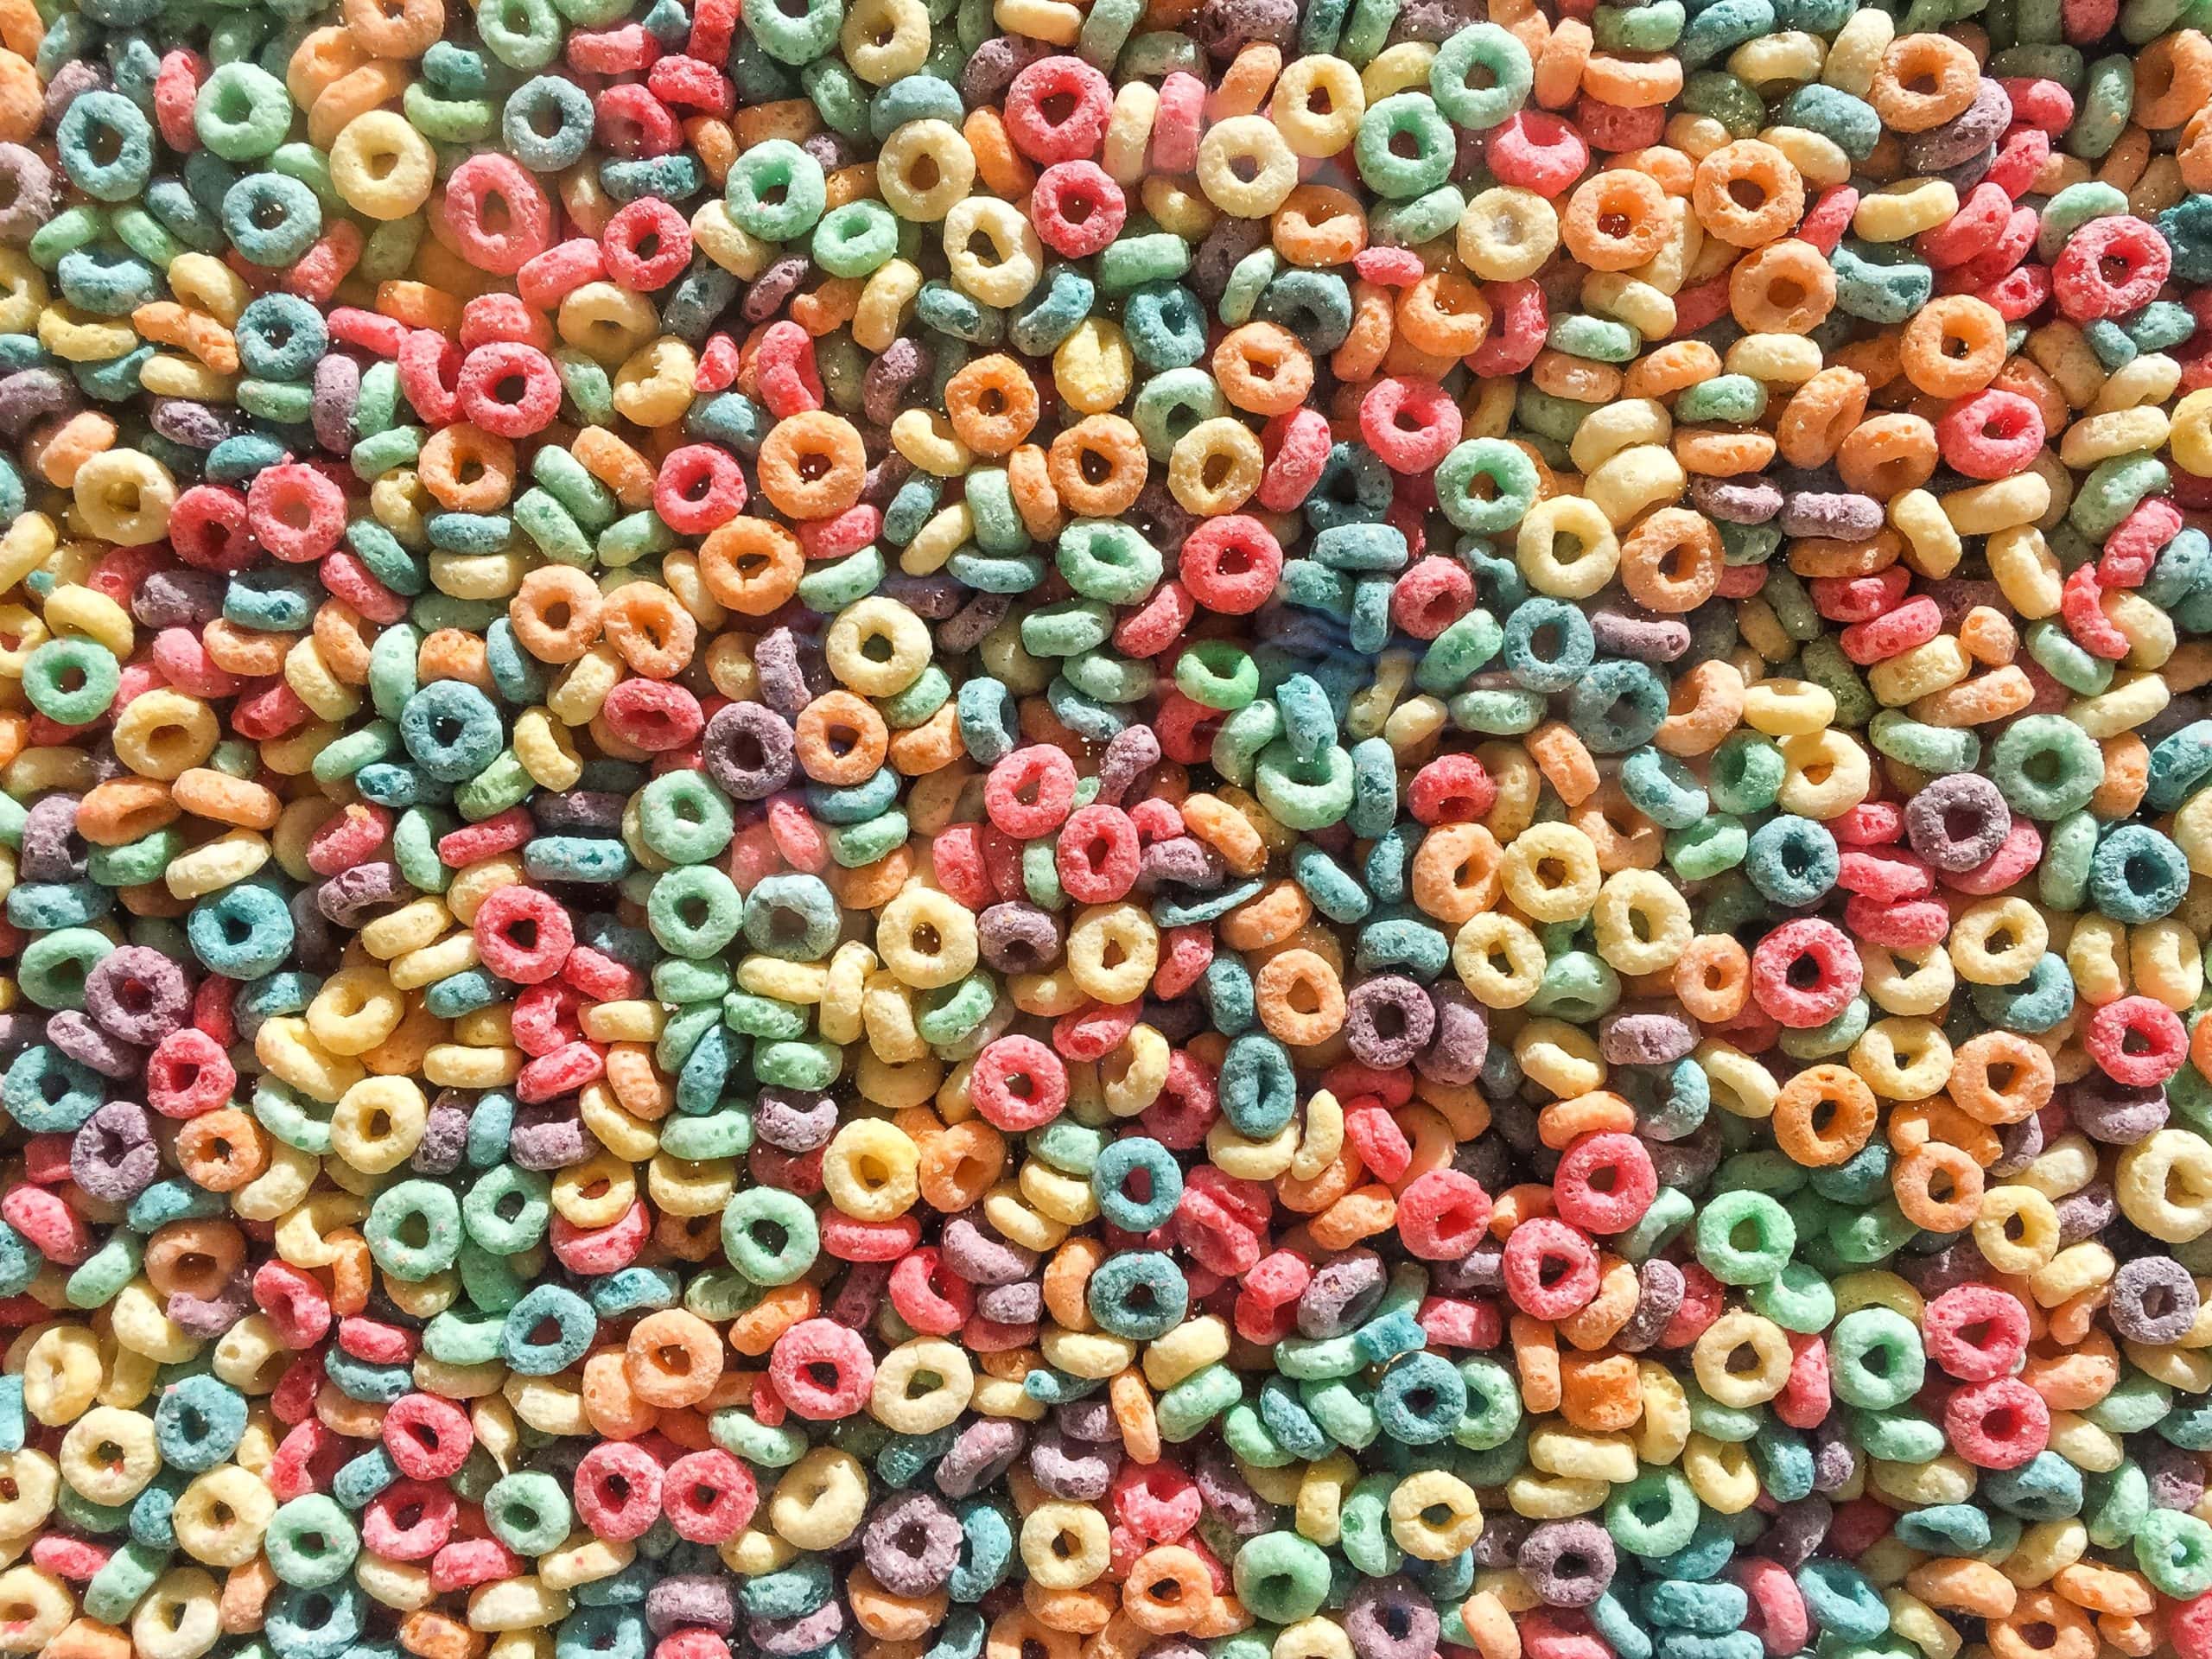 How Healthy are Children’s Breakfast Cereals?